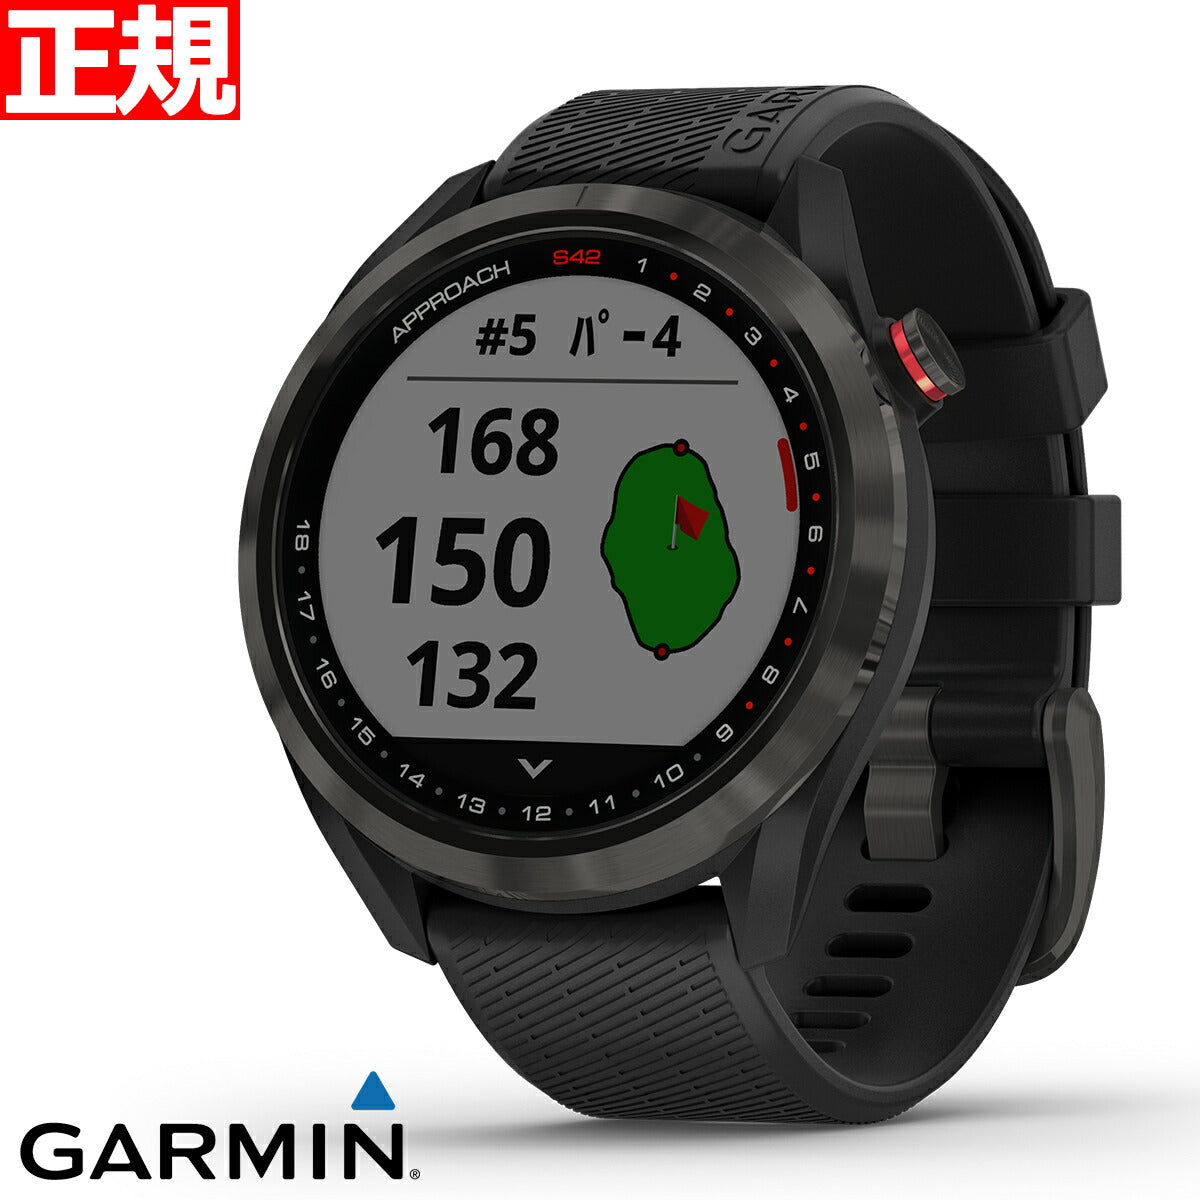 【24回分割手数料無料！】ガーミン GARMIN スマートウォッチ Approach S42 Black/Carbon Gray アプローチ S42 ブラック/カーボングレー ゴルフ GPS ウェアラブル 腕時計 010-02572-20